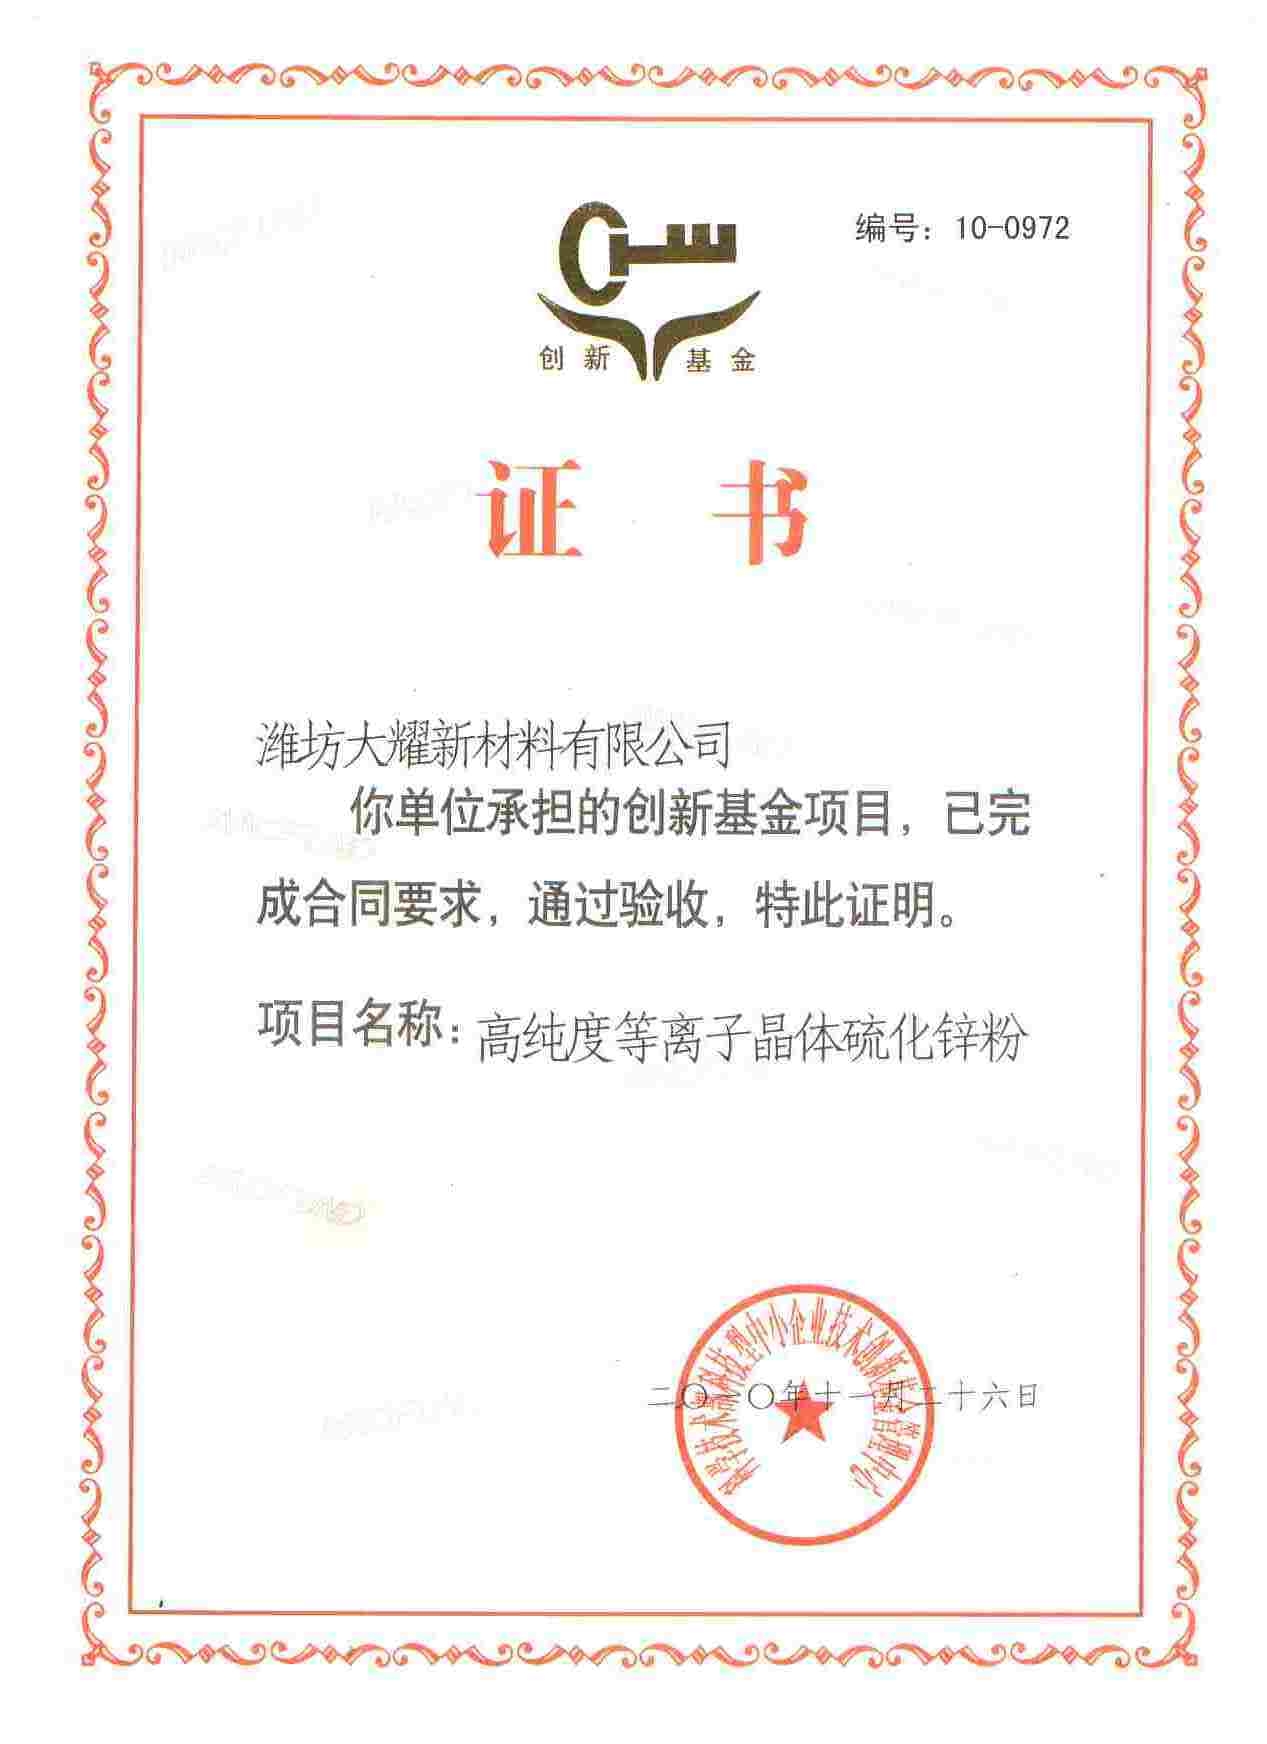 中小企业技术创新基金验收合格证书2010